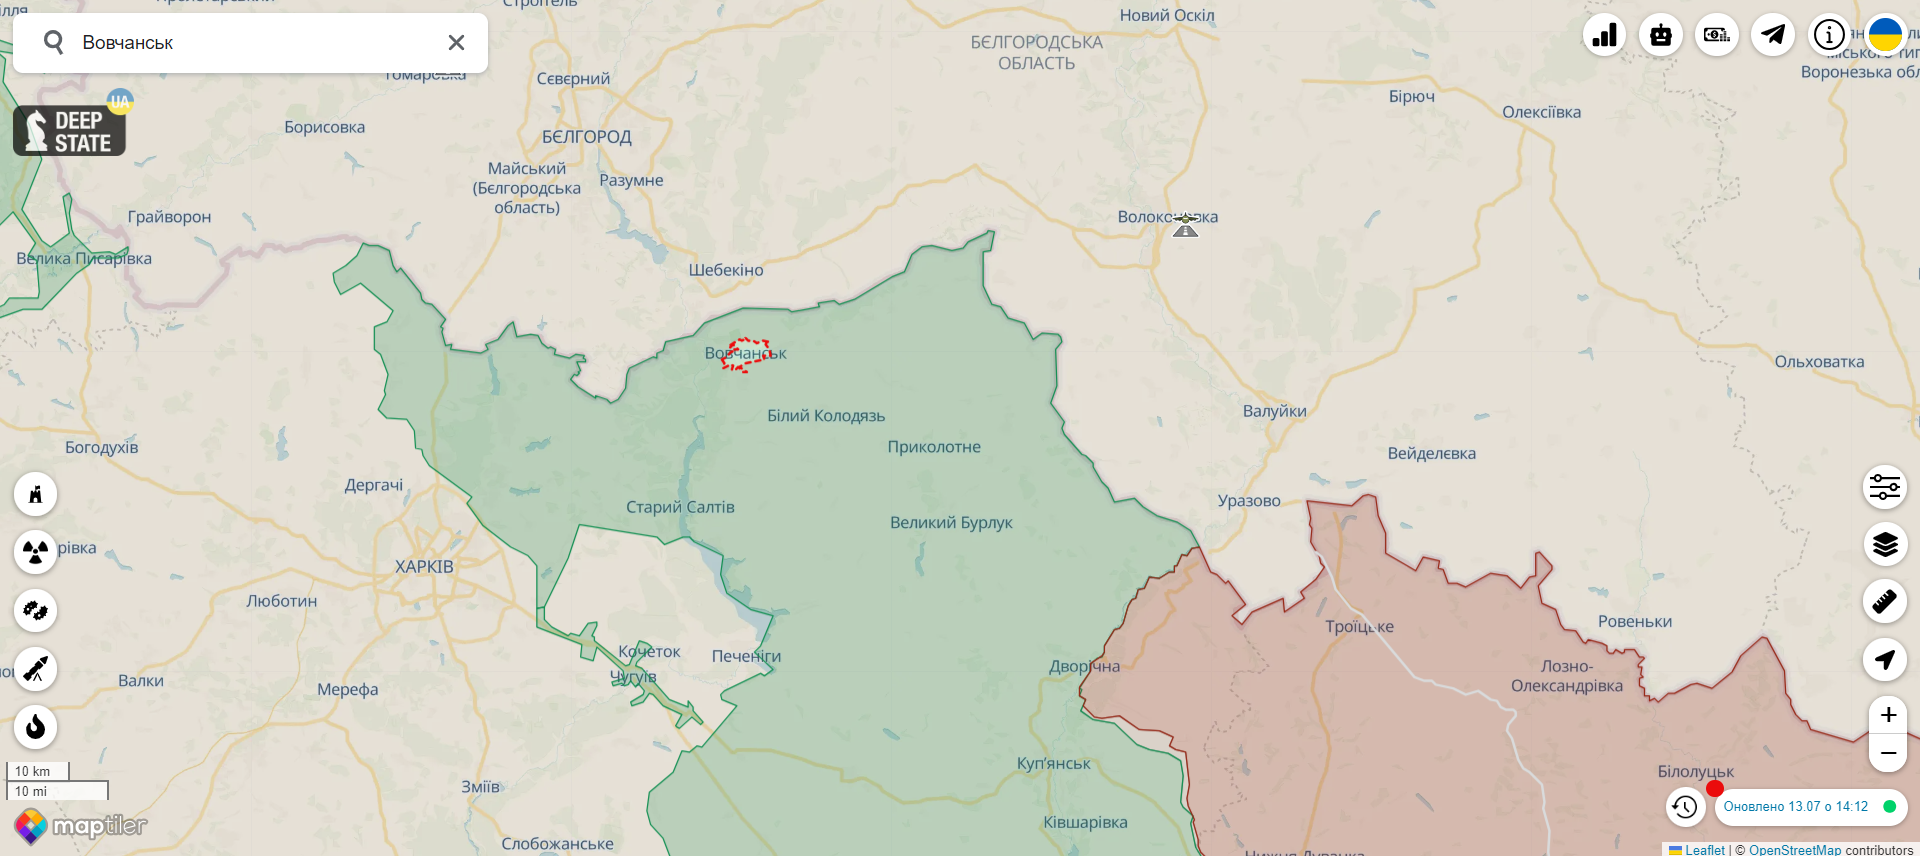 Оккупанты КАБами ударили по Волчанску на Харьковщине: погибла женщина, еще одна ранена